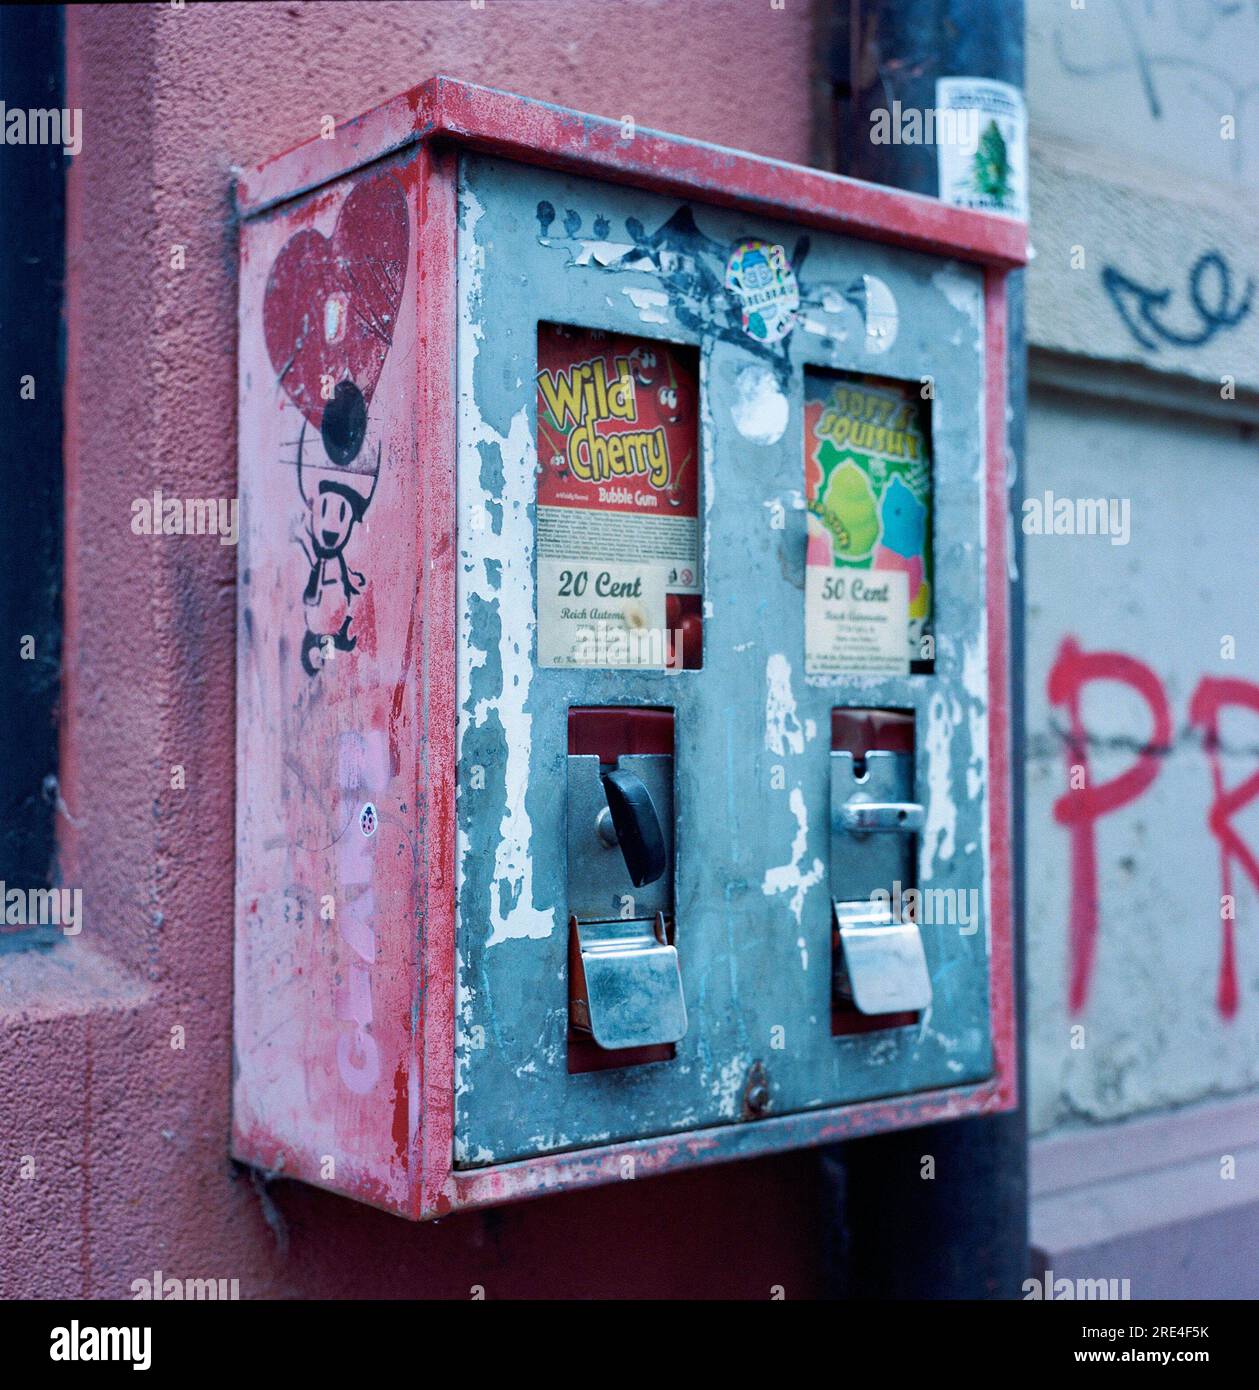 Une machine à Gumball est un distributeur automatique dont le but original est de vendre du chewing-gum. Le chewing-gum est généralement des boules dures d'un diamètre d'environ un centi Banque D'Images